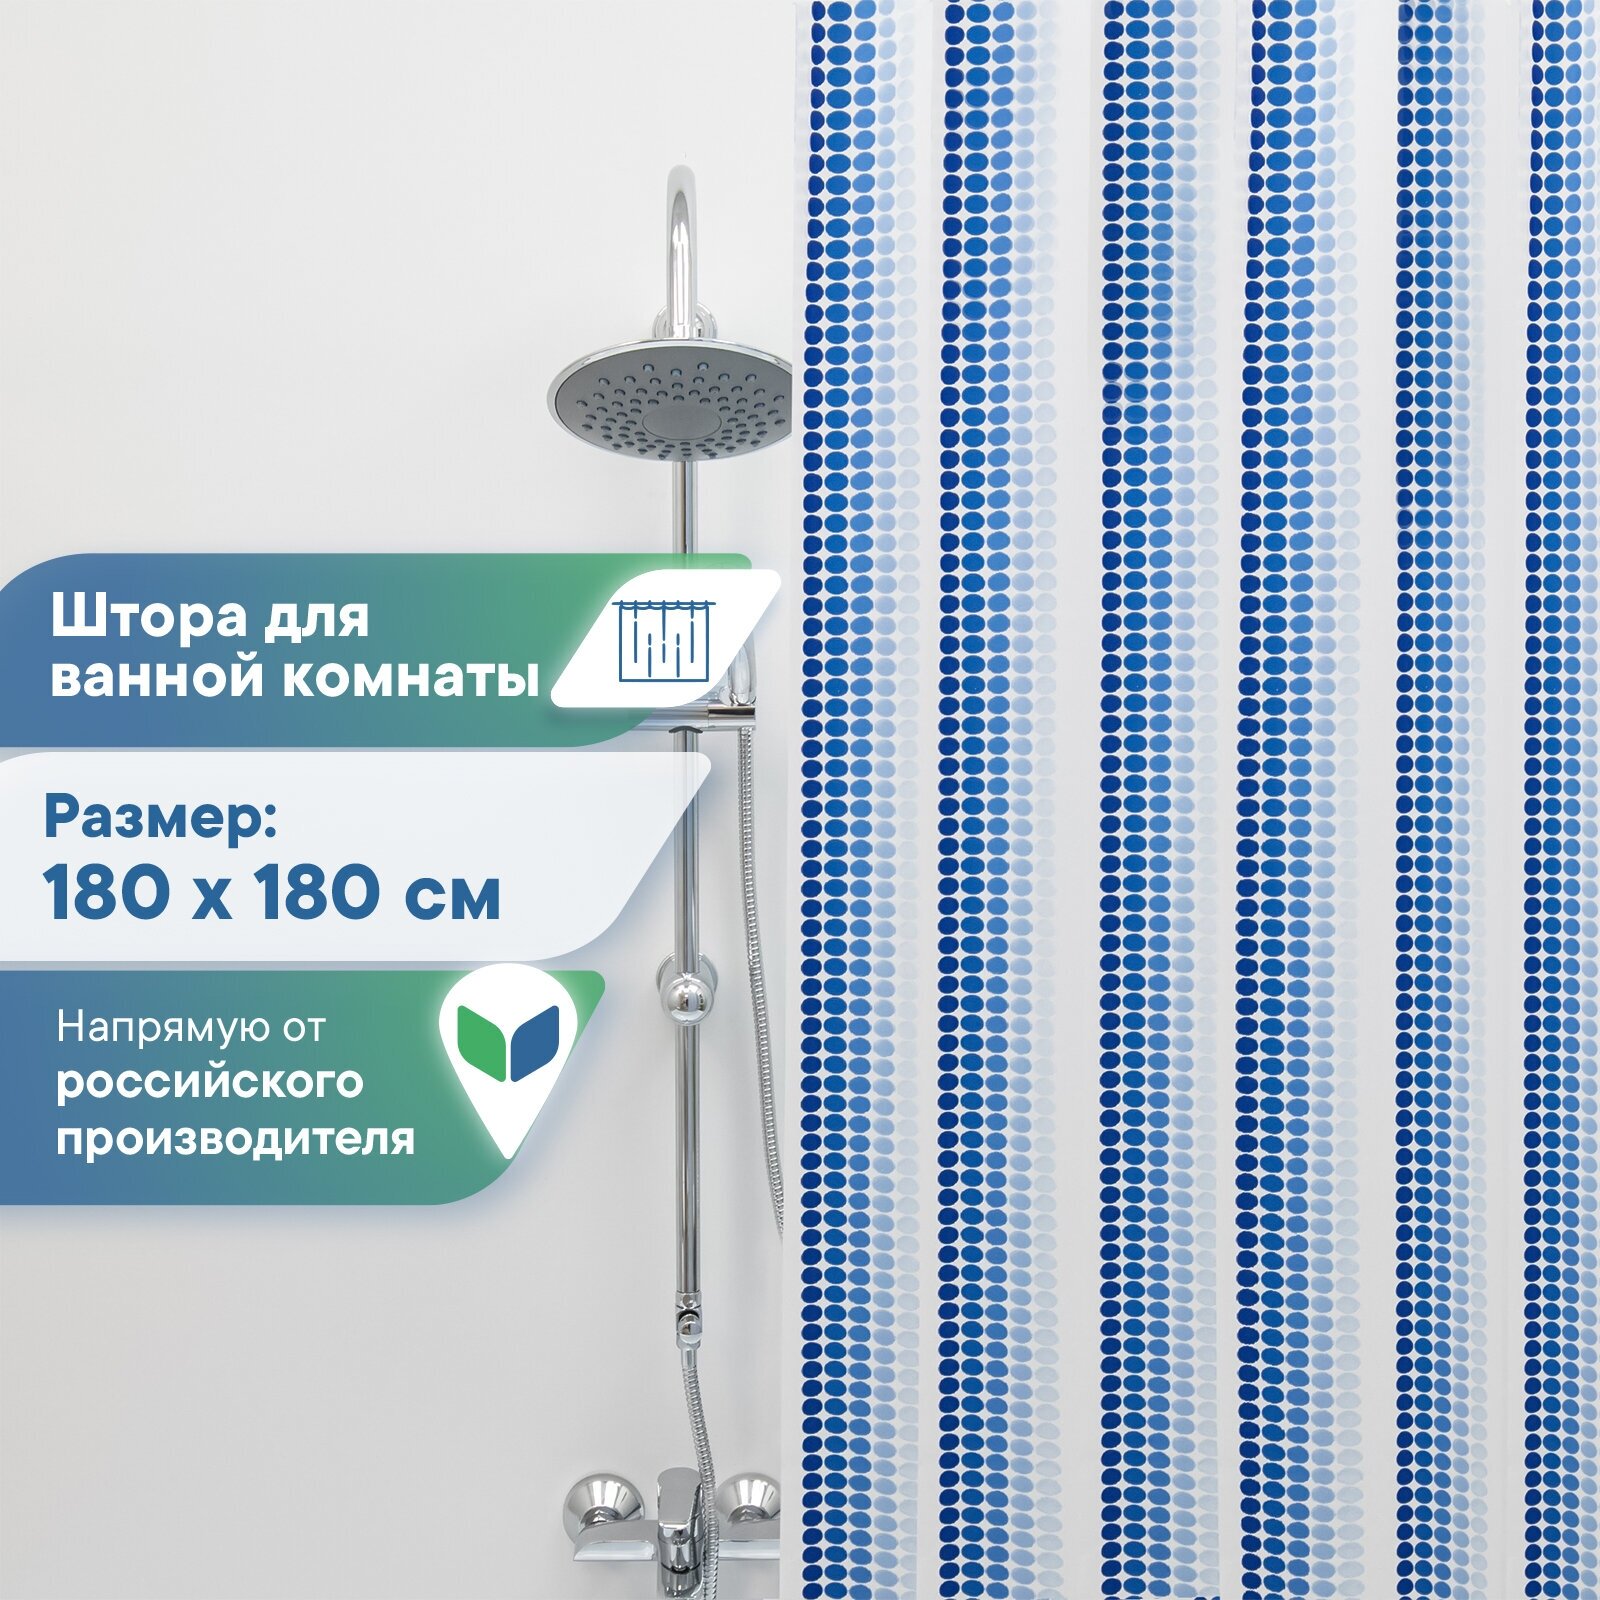 Штора для ванной комнаты VILINA водонепроницаемая полиэтиленовая 180х180 см Ритм синяя